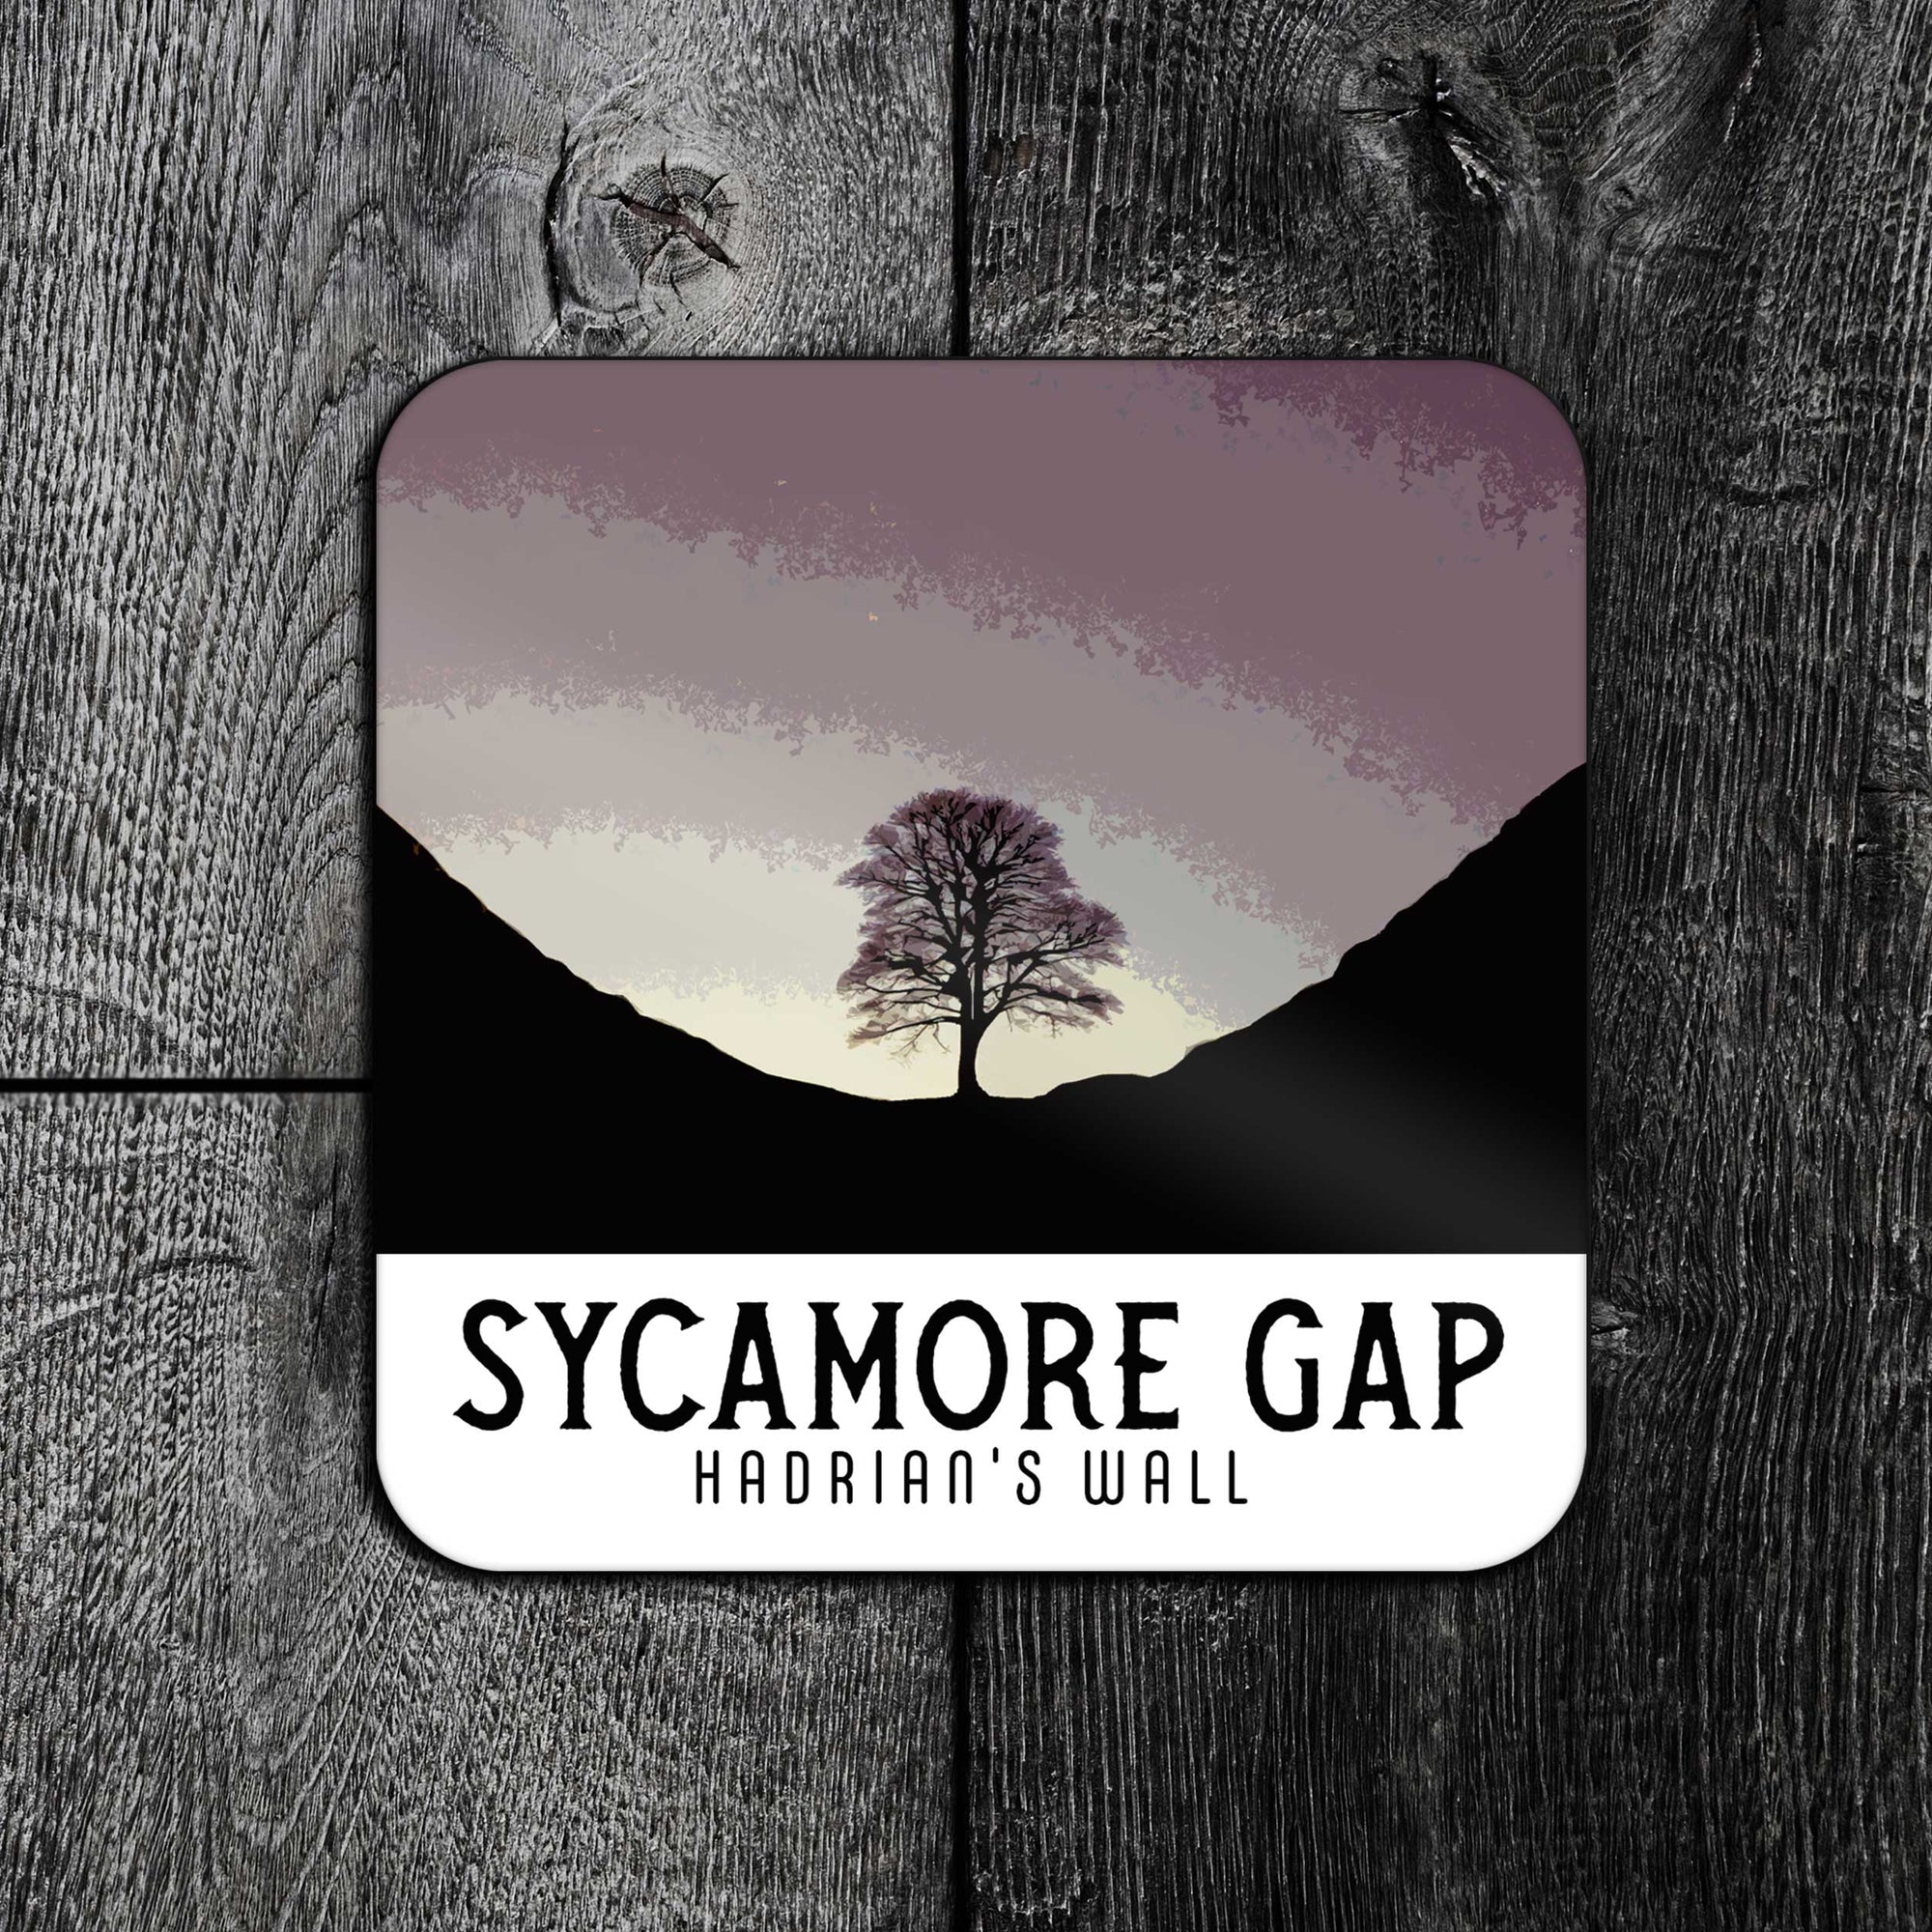 Sycamore Gap: The End of an Era Coaster